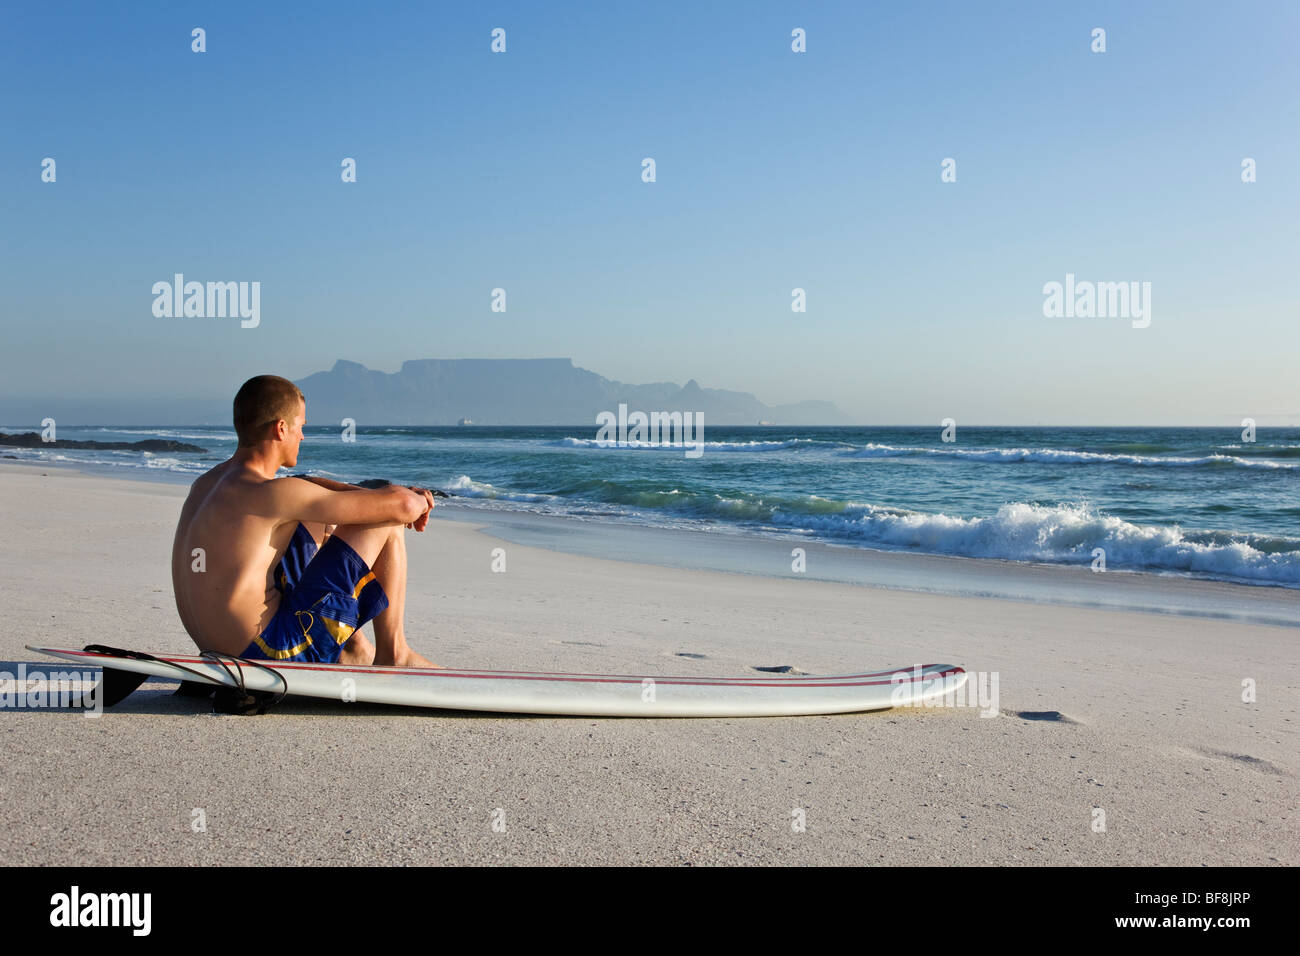 Surfer sur la plage de Bloubergstrand avec Table Mountain en arrière-plan. Cape Town Afrique du Sud Banque D'Images